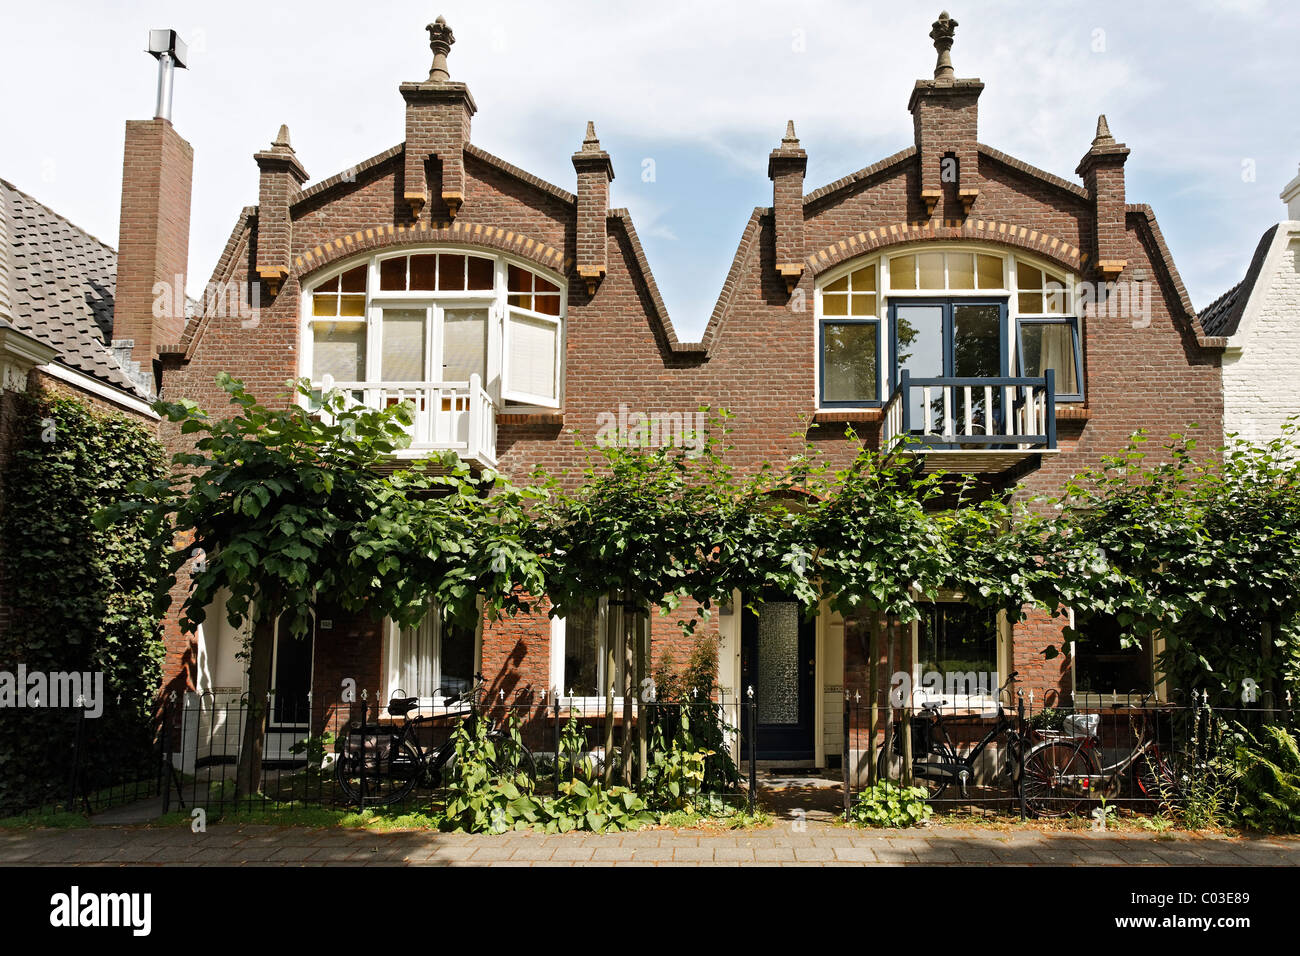 Maisons de ville historiques avec frontons sur Nordsingel street, Middelburg, presqu'île de Walcheren, province de Zélande, Pays-Bas, Benelux Banque D'Images